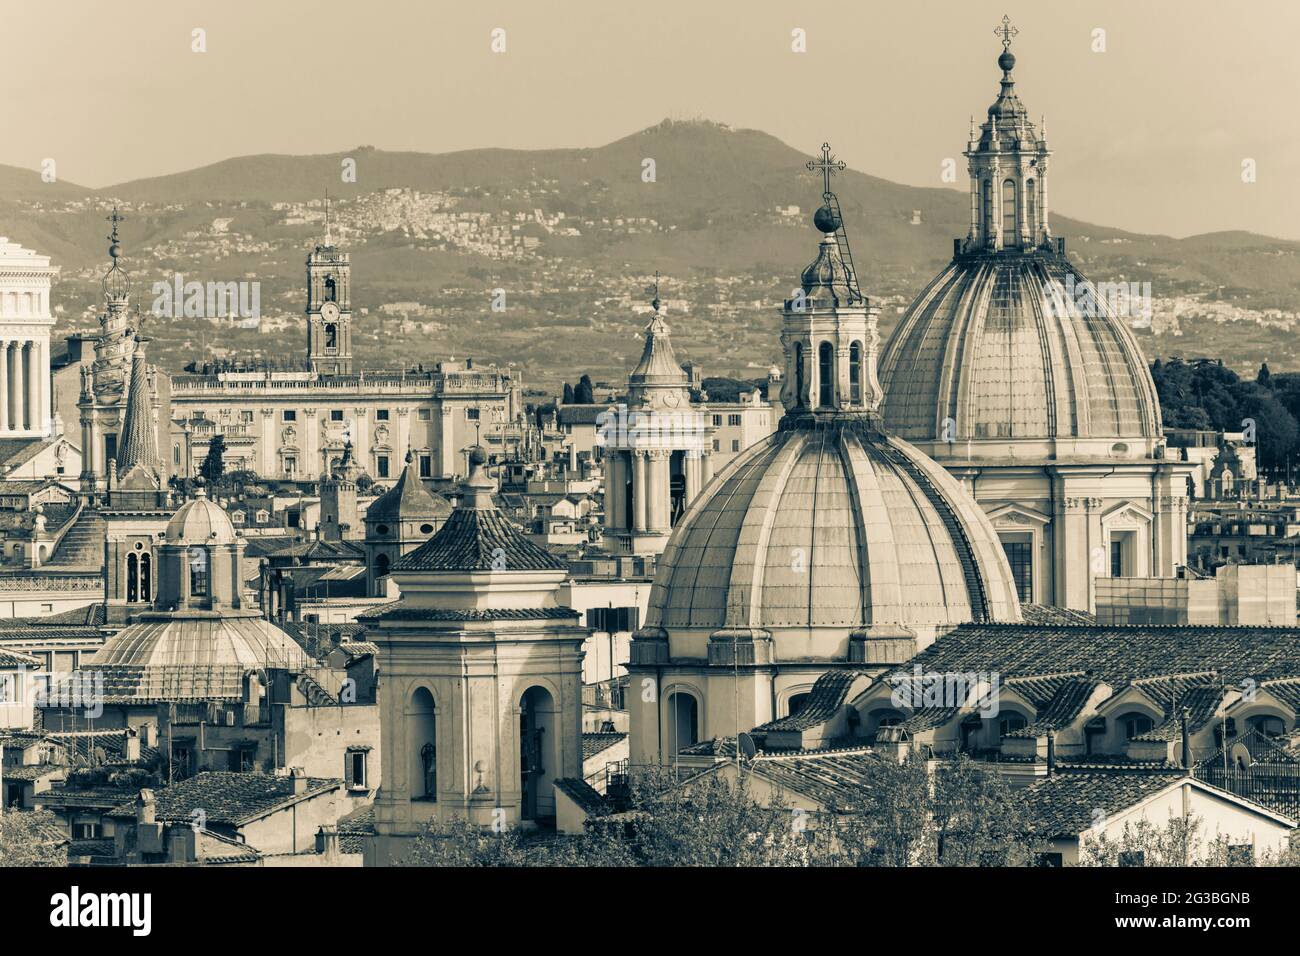 Rom, Italien. Kuppeln, Türme und Dächer von der Engelsburg aus gesehen. Das historische Zentrum von Rom ist ein UNESCO-Weltkulturerbe. Stockfoto